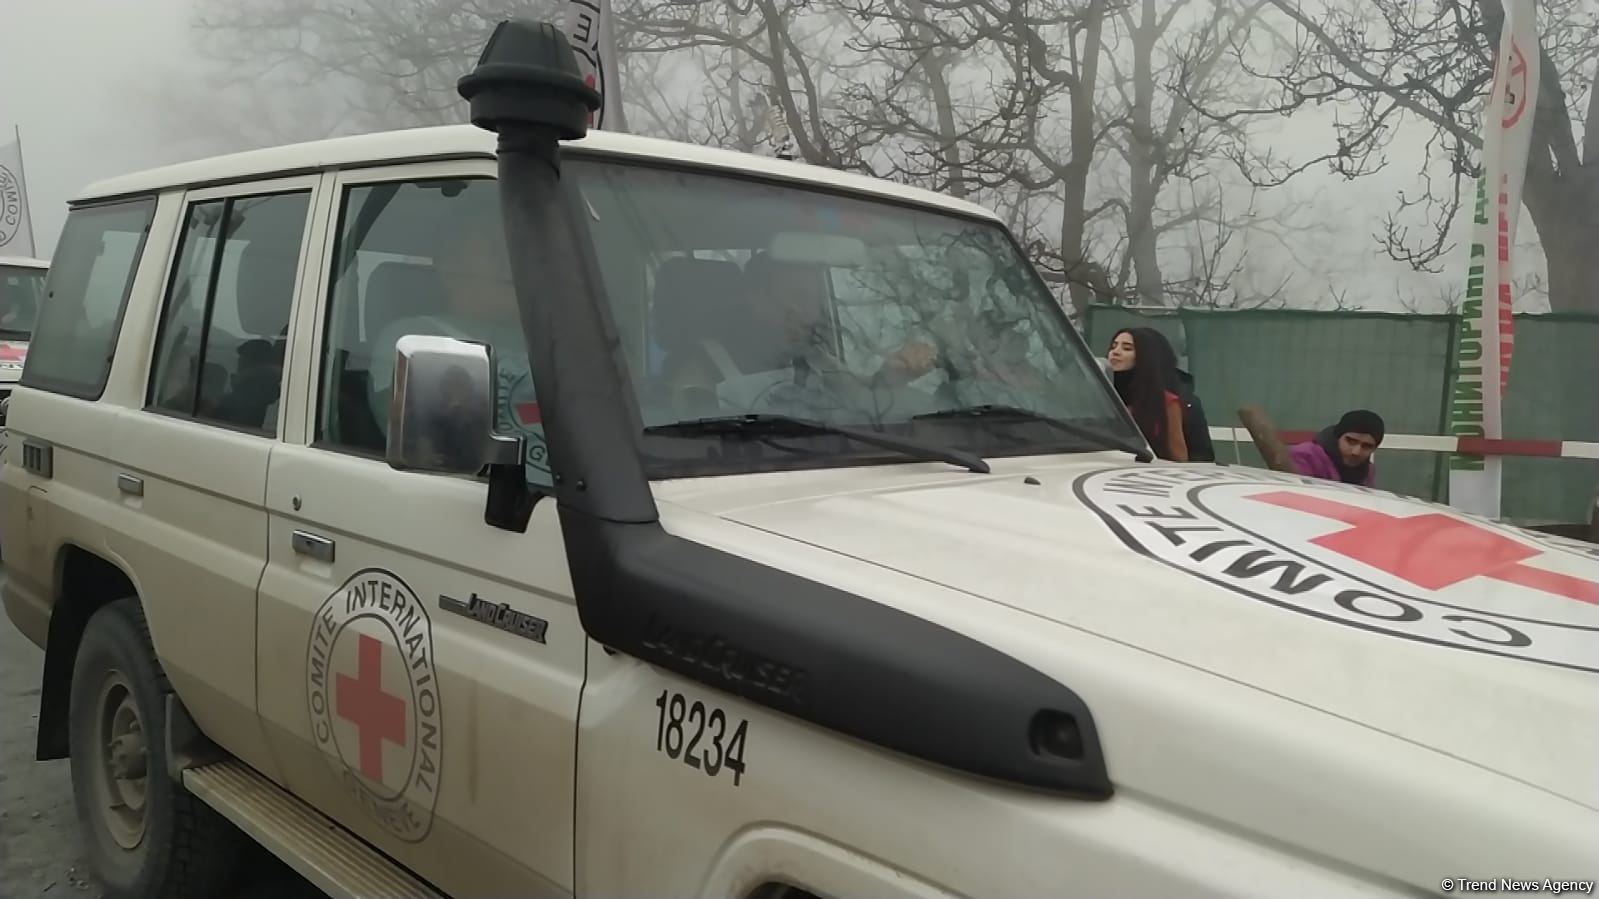 По Лачинской дороге беспрепятственно проехали семь автомобилей Красного Креста (ФОТО)